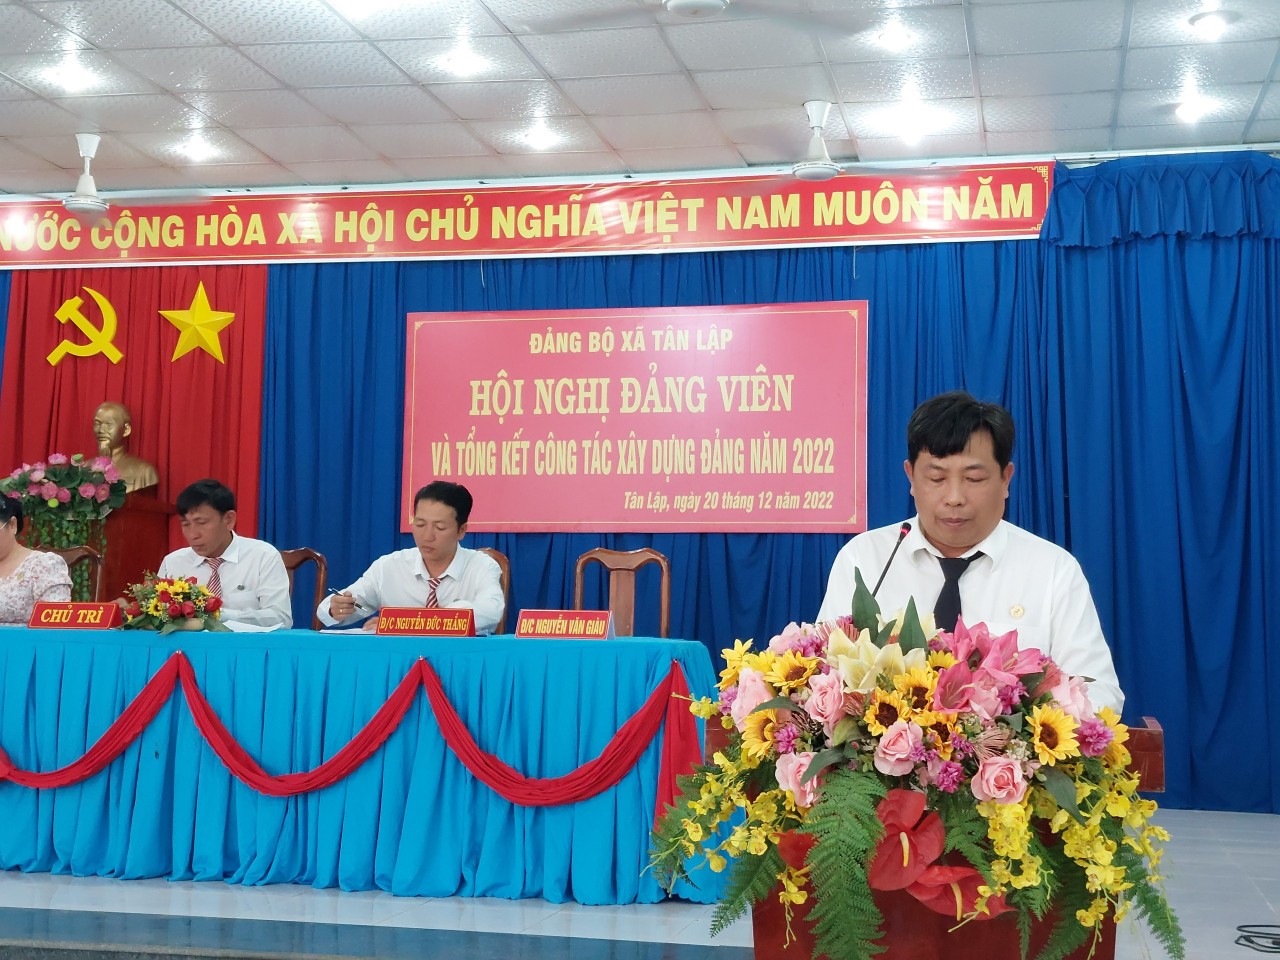 Đảng ủy xã Tân Lập hội nghị đảng viên  và tổng kết công tác xây dựng Đảng năm 2022